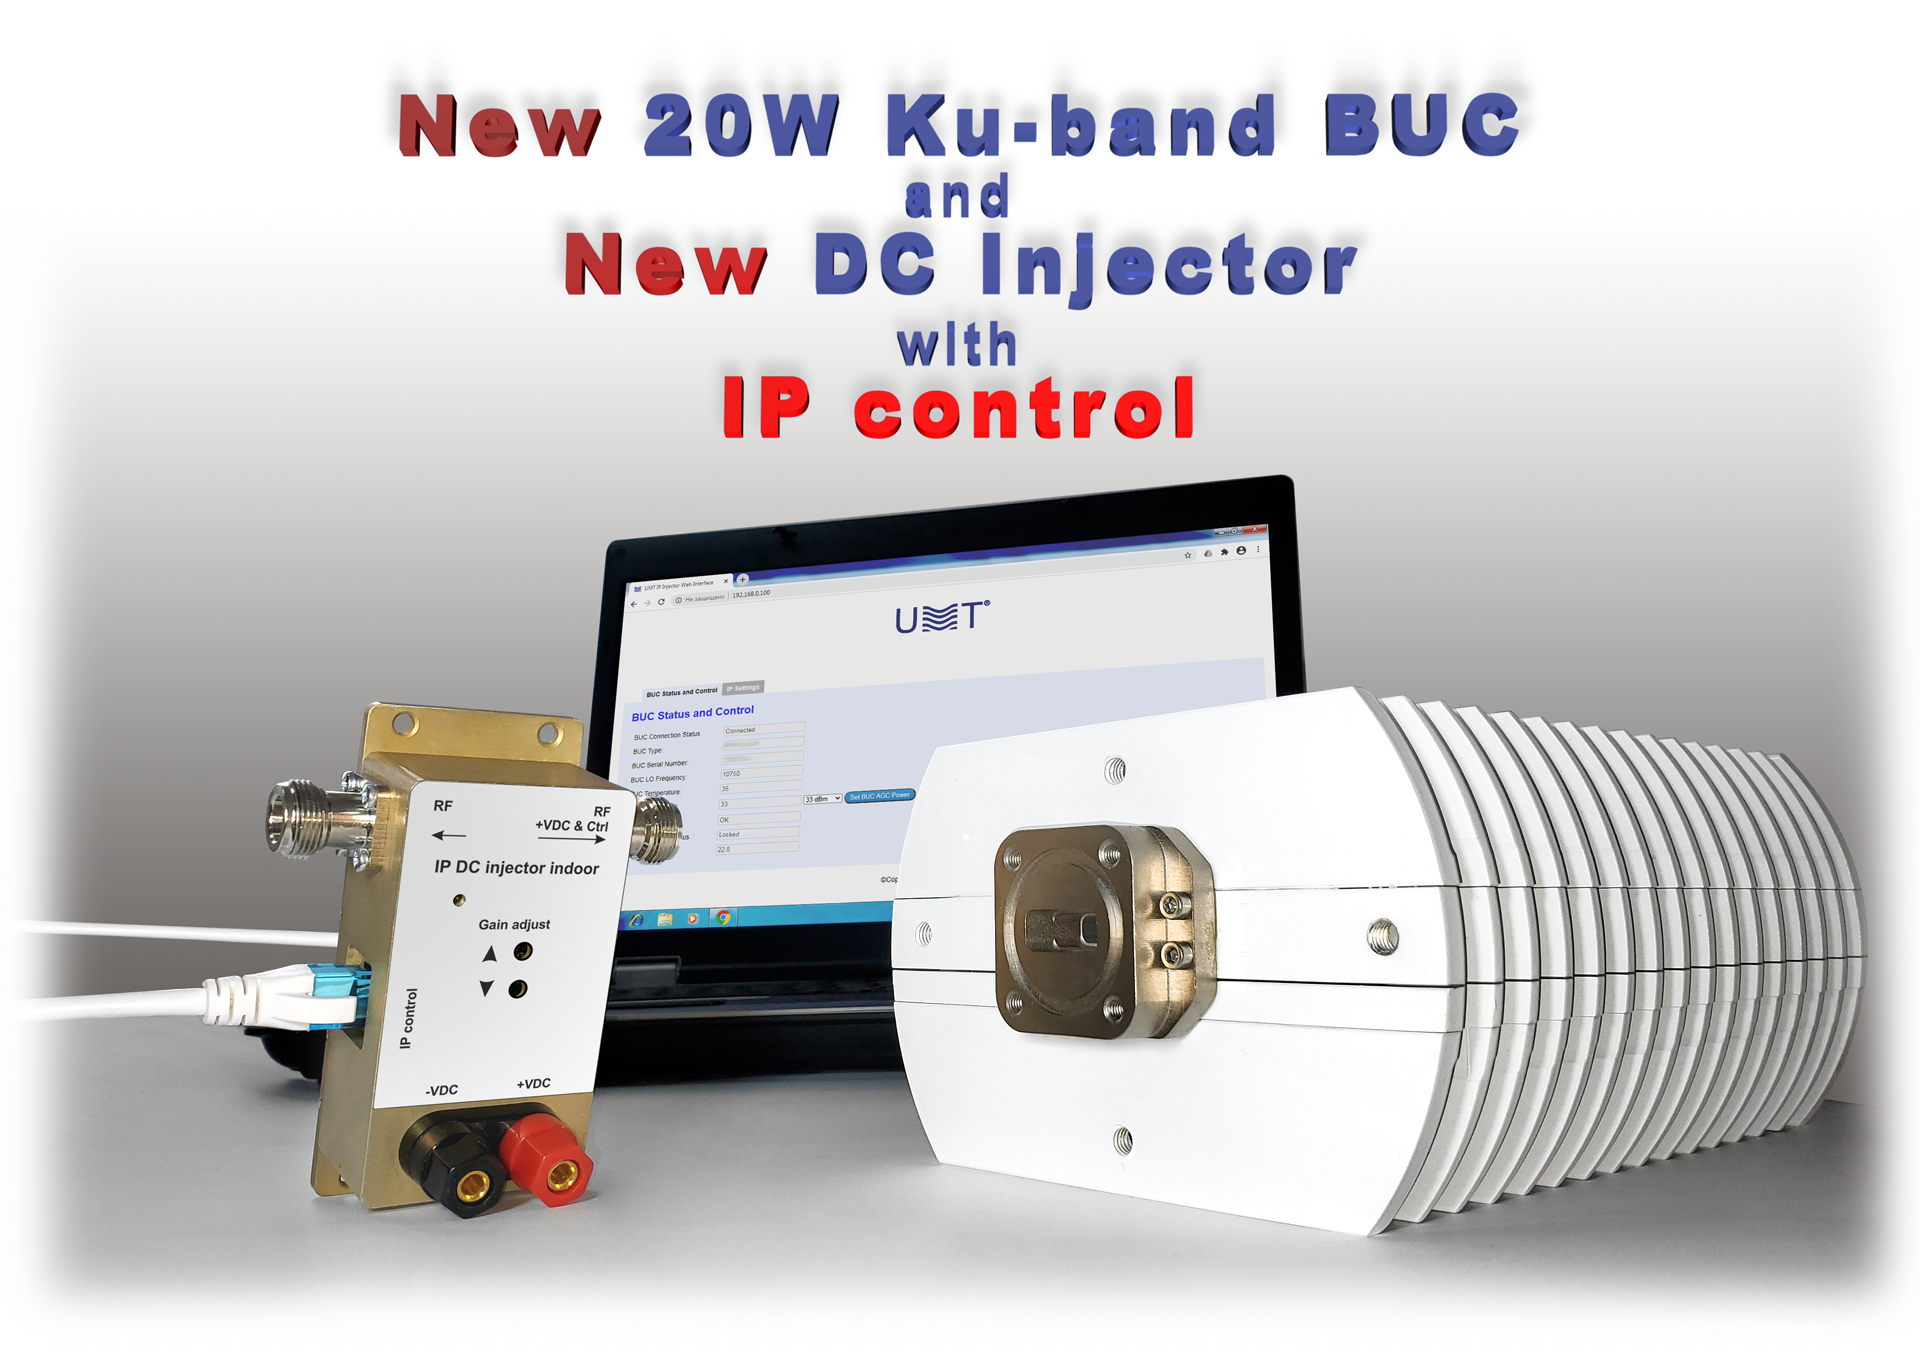 خط BUC جديد مع التحكم في IP